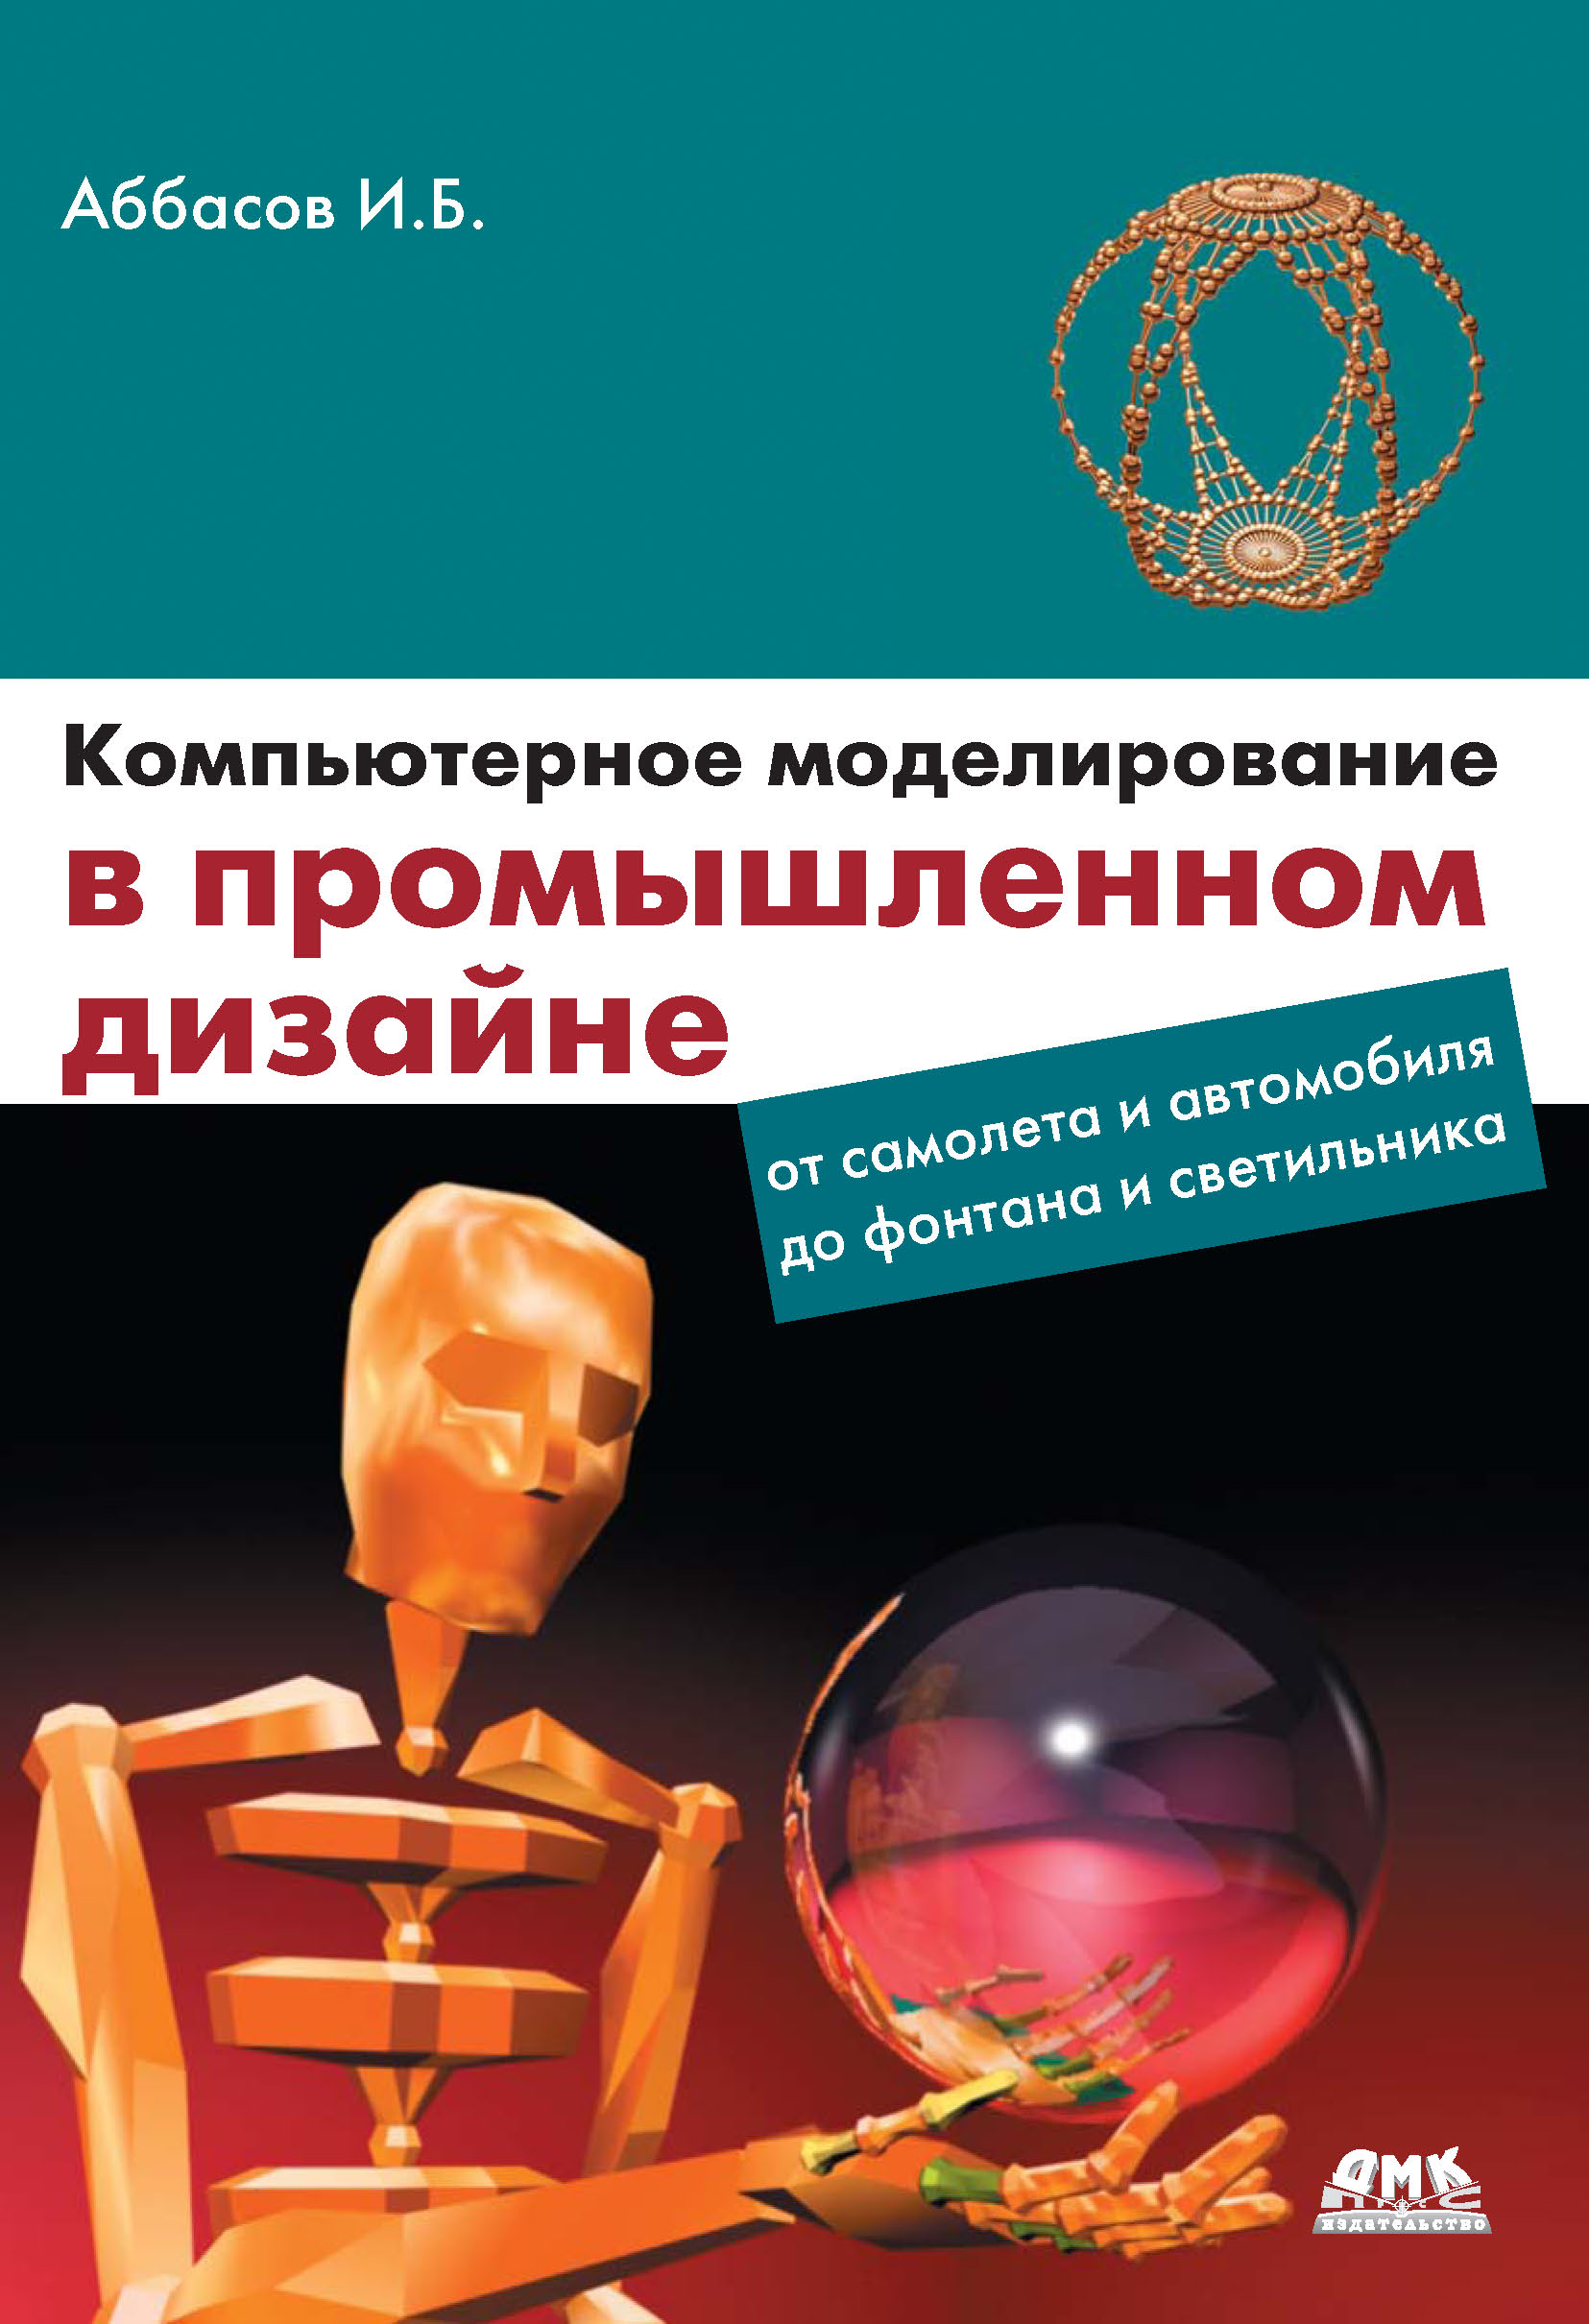 Книга  Компьютерное моделирование в промышленном дизайне созданная И. Б. Аббасов может относится к жанру программы. Стоимость электронной книги Компьютерное моделирование в промышленном дизайне с идентификатором 6089248 составляет 319.00 руб.